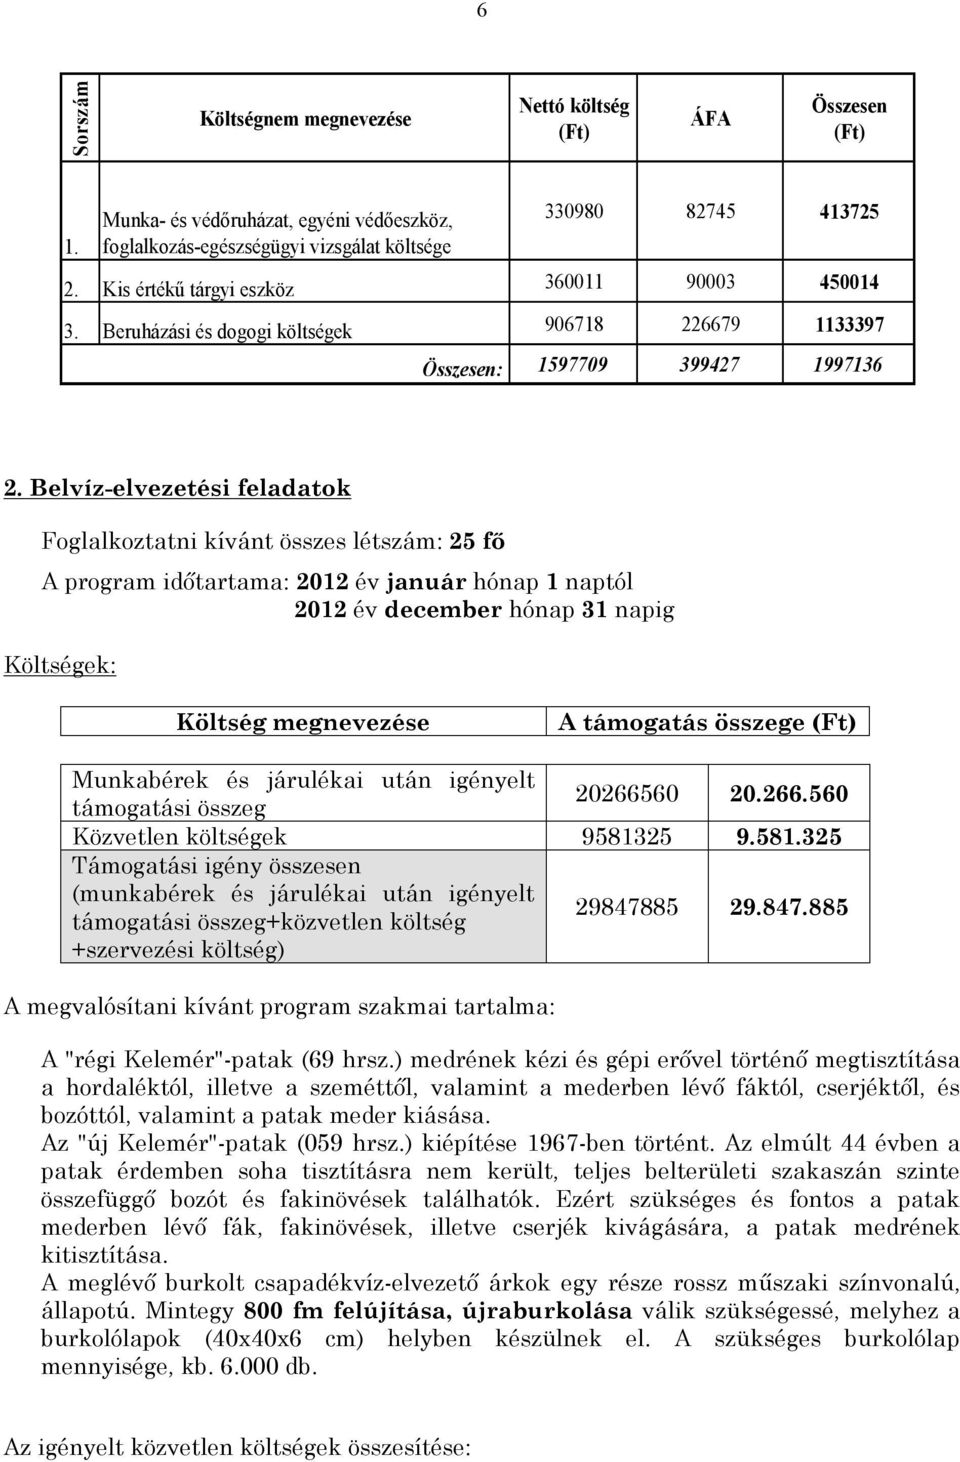 Belvíz-elvezetési feladatok Foglalkoztatni kívánt összes létszám: 25 fő A program időtartama: 2012 év január hónap 1 naptól 2012 év december hónap 31 napig Költségek: Költség megnevezése A támogatás